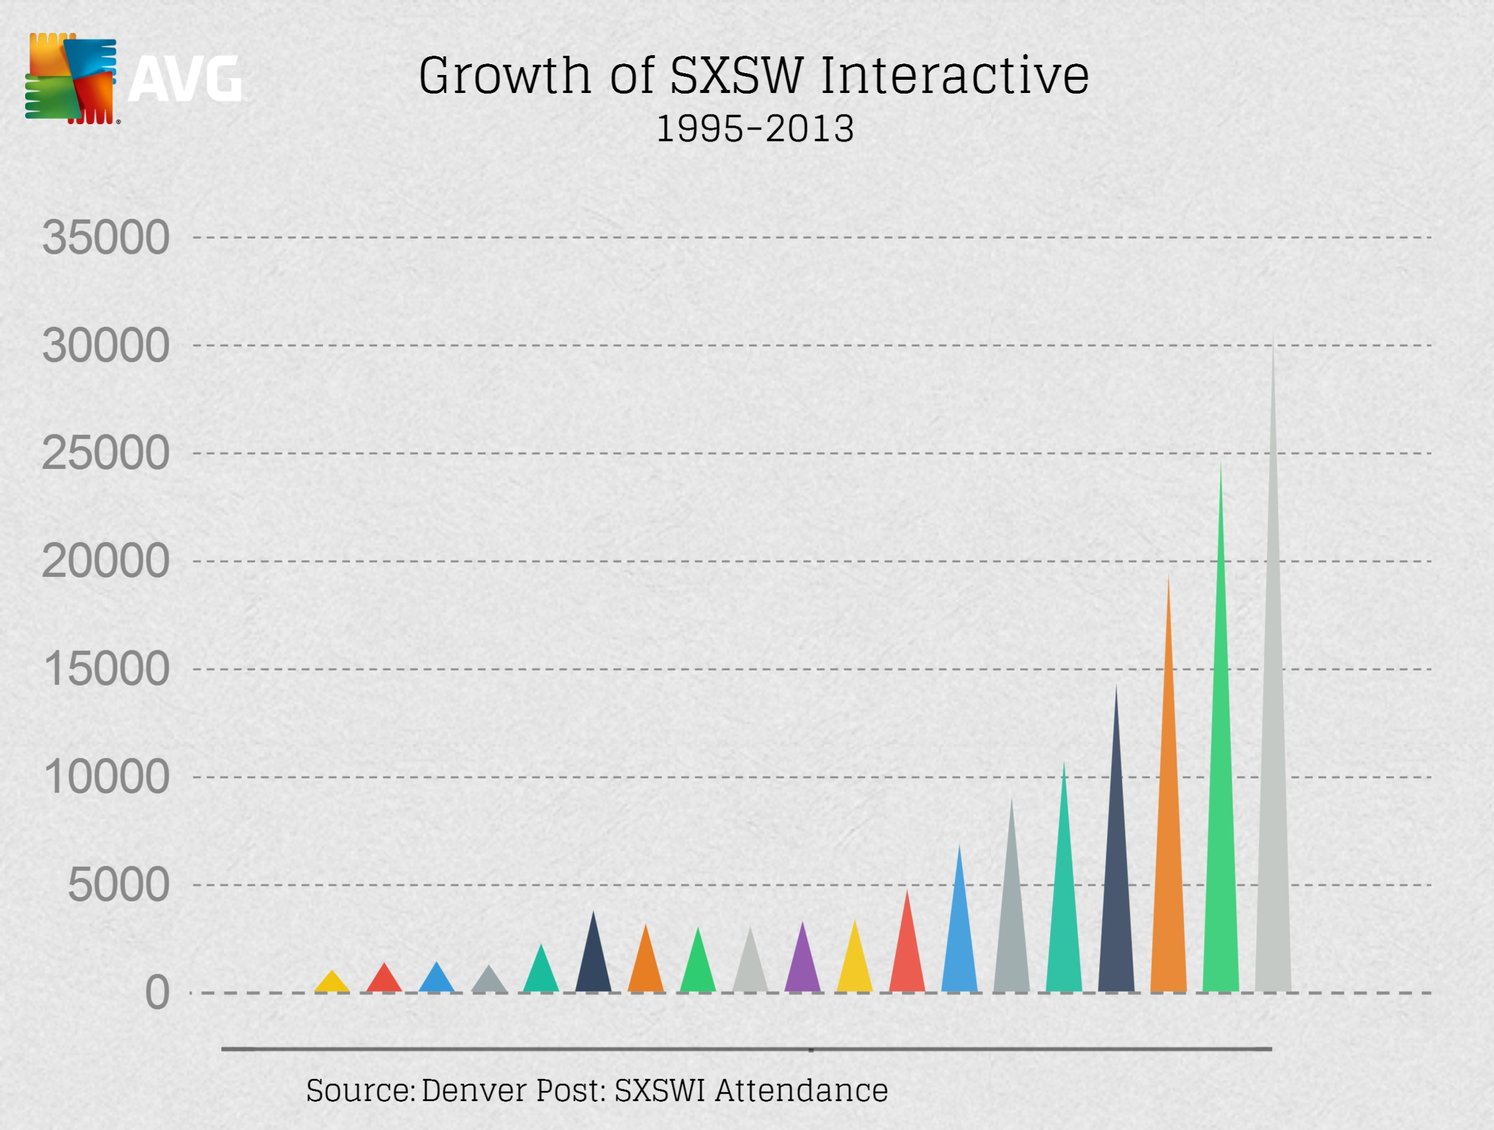 SXSW Interactive growth